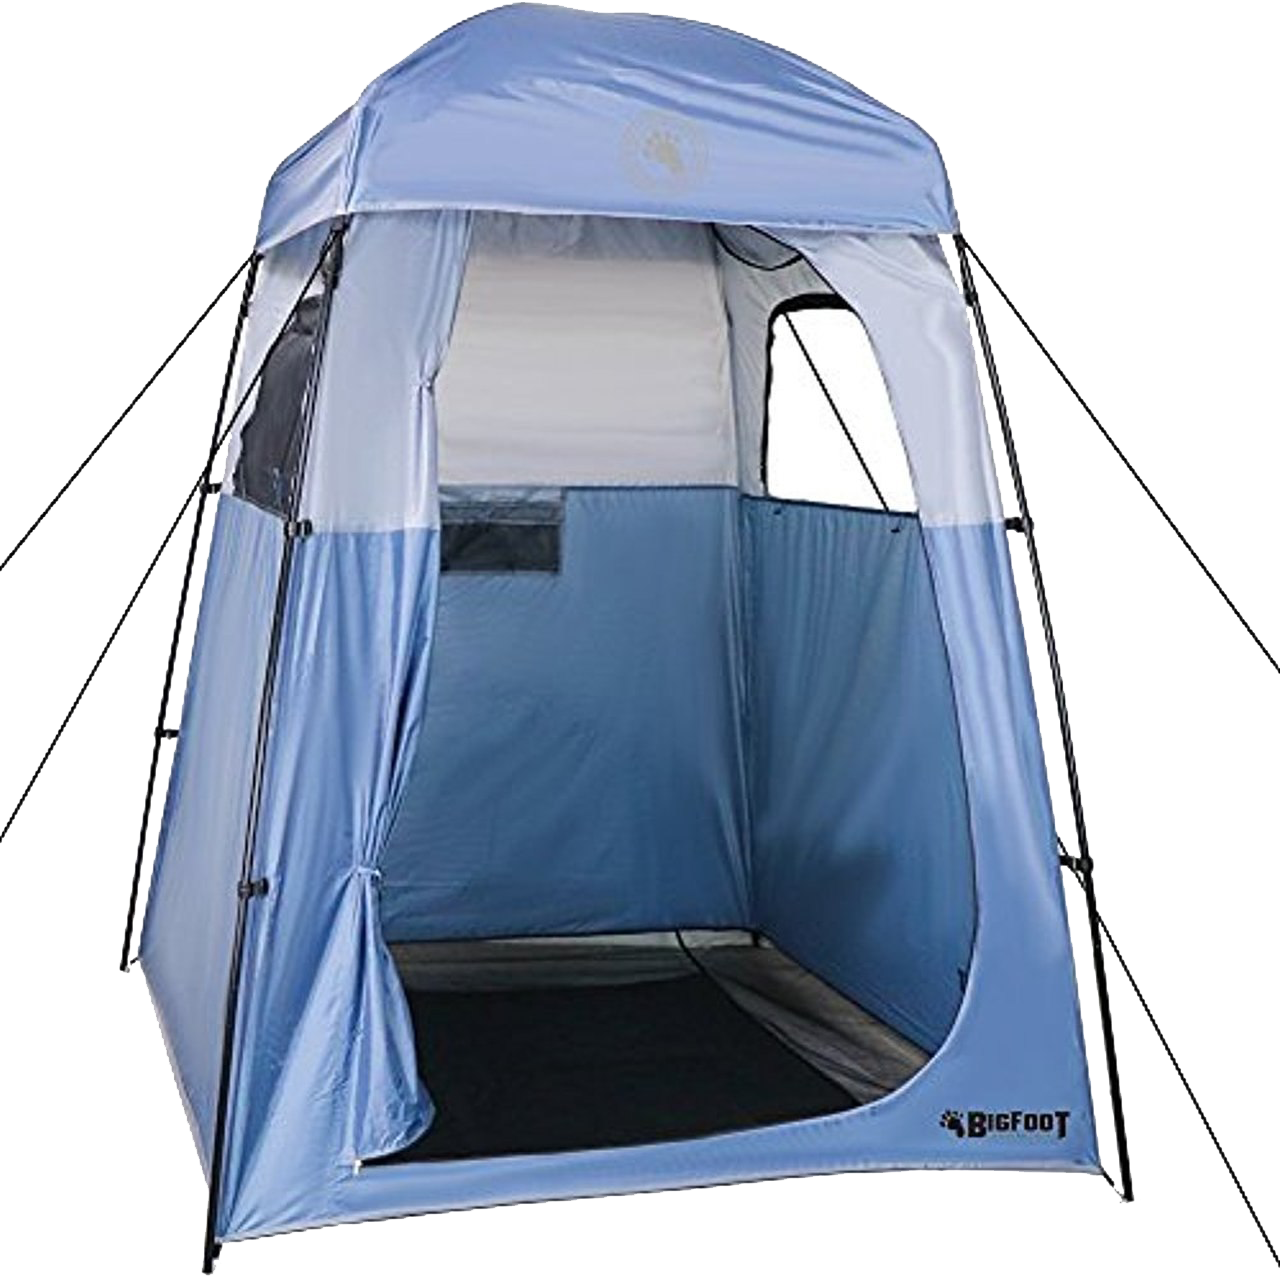 Imagem de alta qualidade de tenda de acampamento